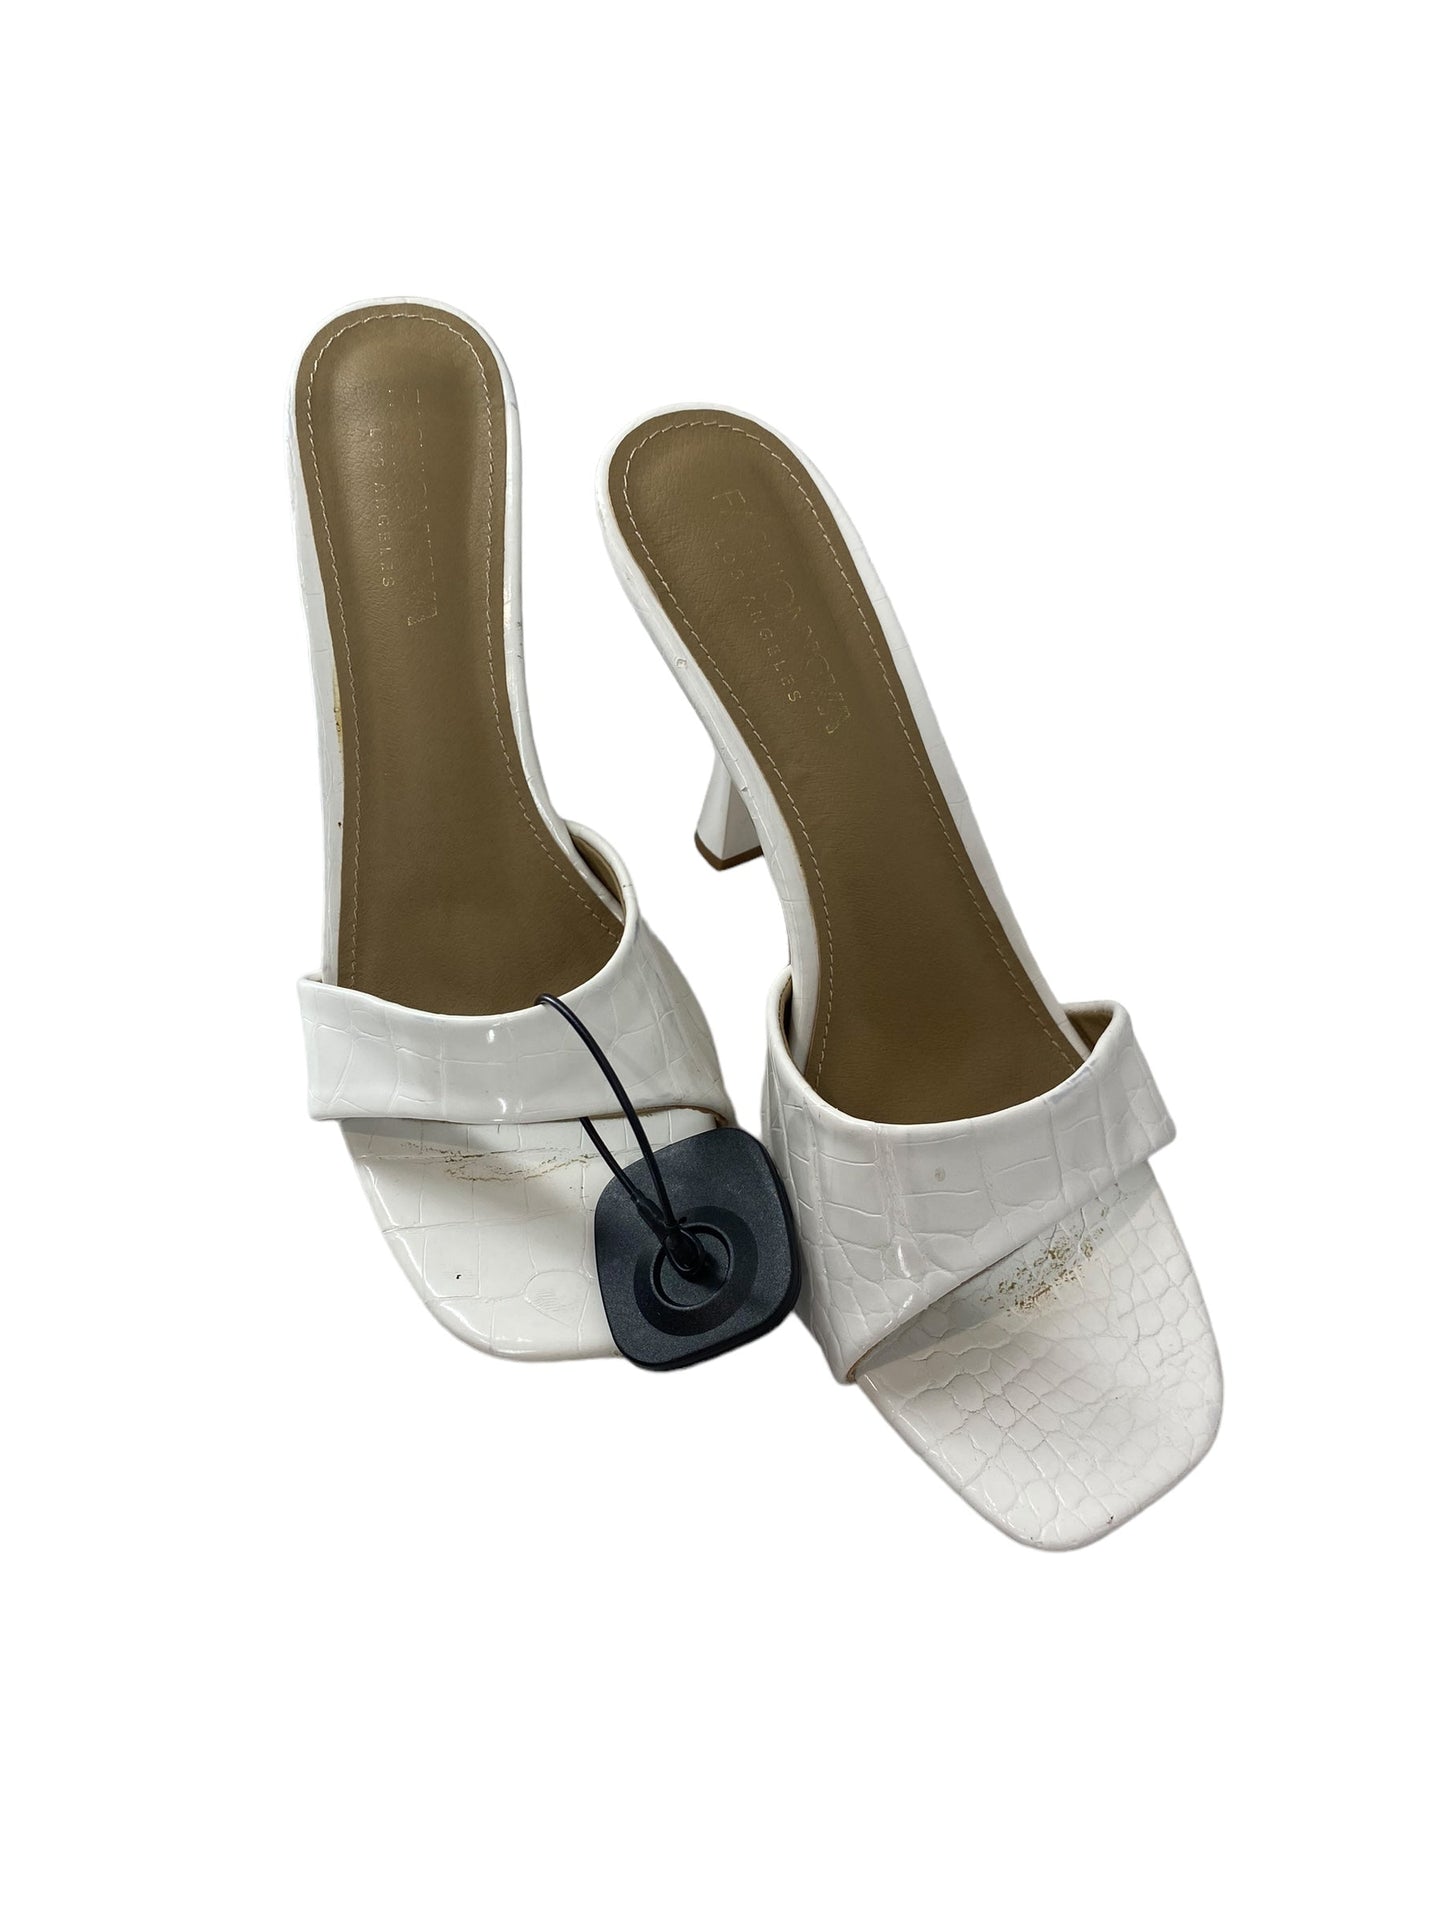 White Sandals Heels Stiletto Fashion Nova, Size 8.5